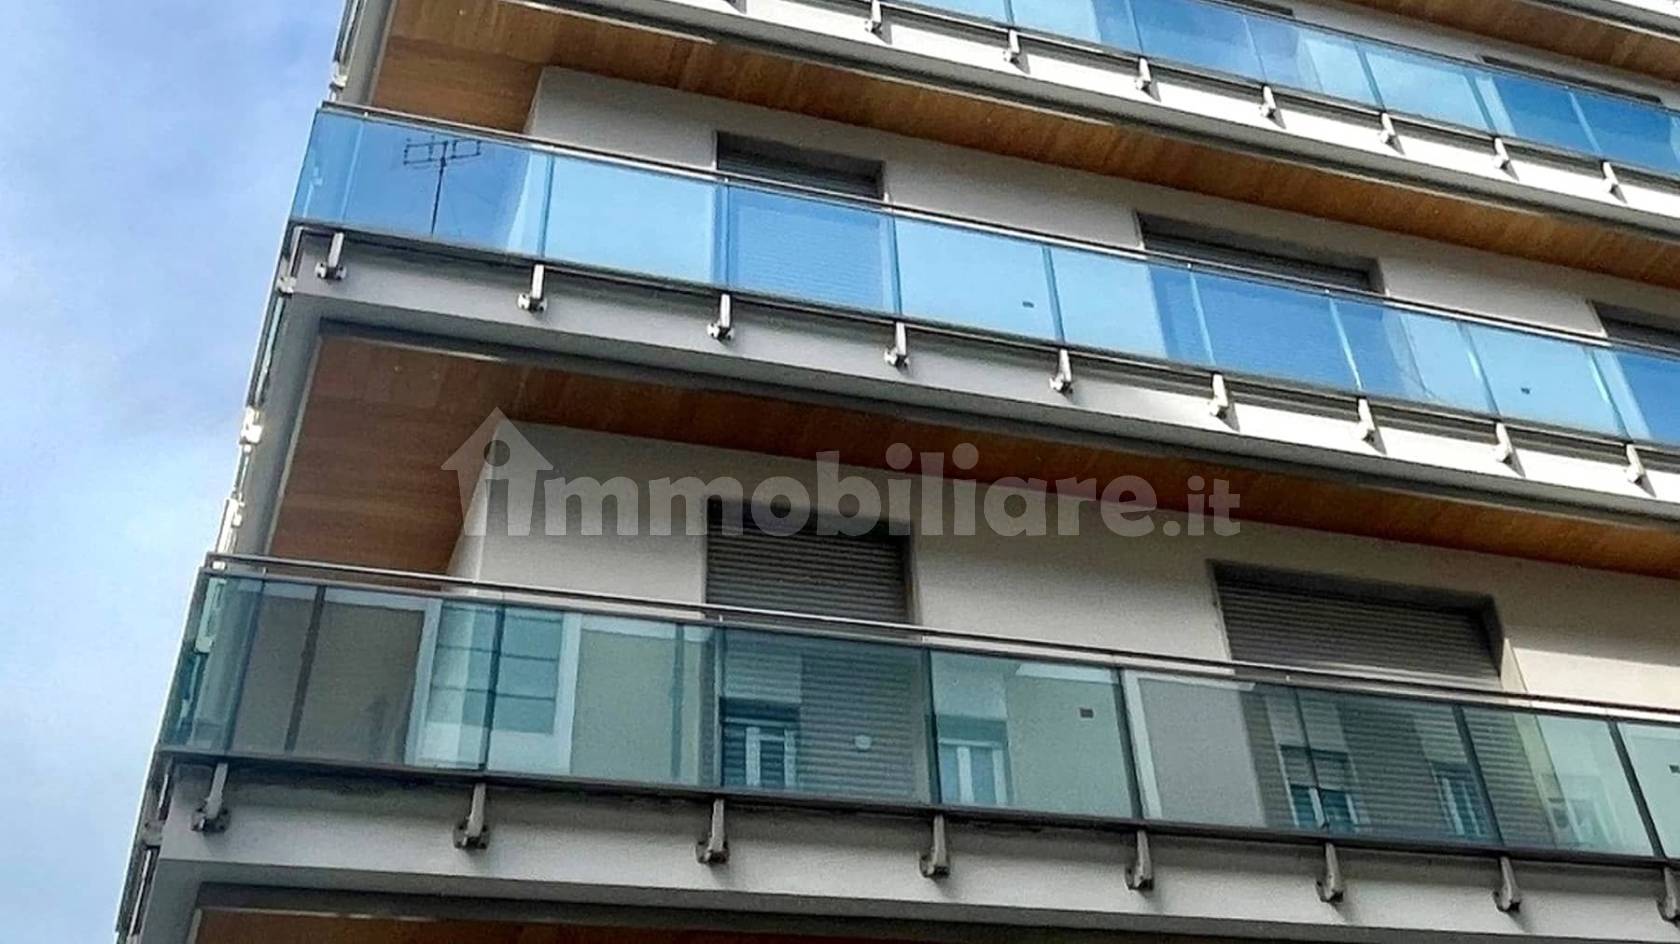 Vendita Appartamento Cuneo. Bilocale in via Michele Coppino, 4, 12100.  Nuovo, terzo piano, rif. 108664911